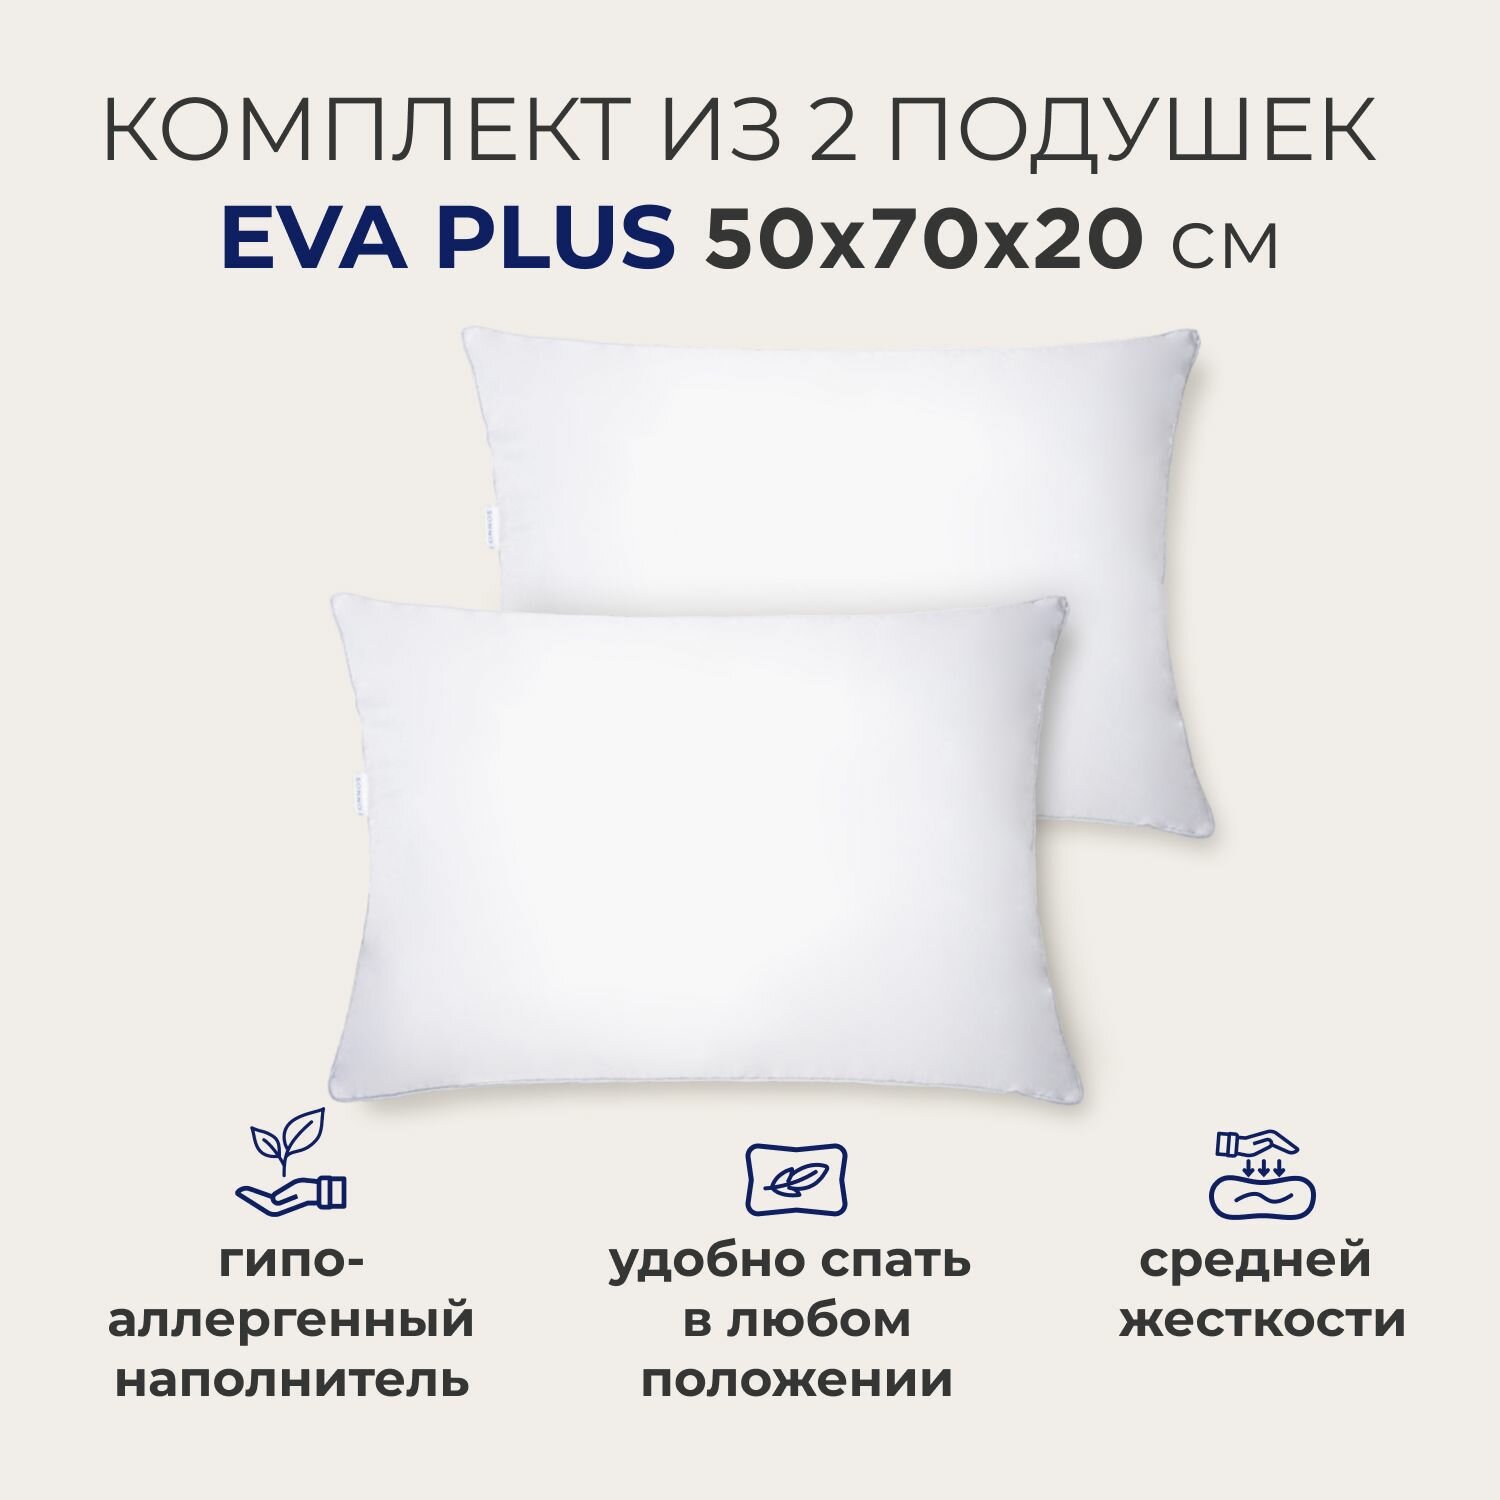 Комплект из двух подушек для сна SONNO EVA PLUS 50x70х20 см  средней жесткости гипоаллергенный наполнитель Amicor TM